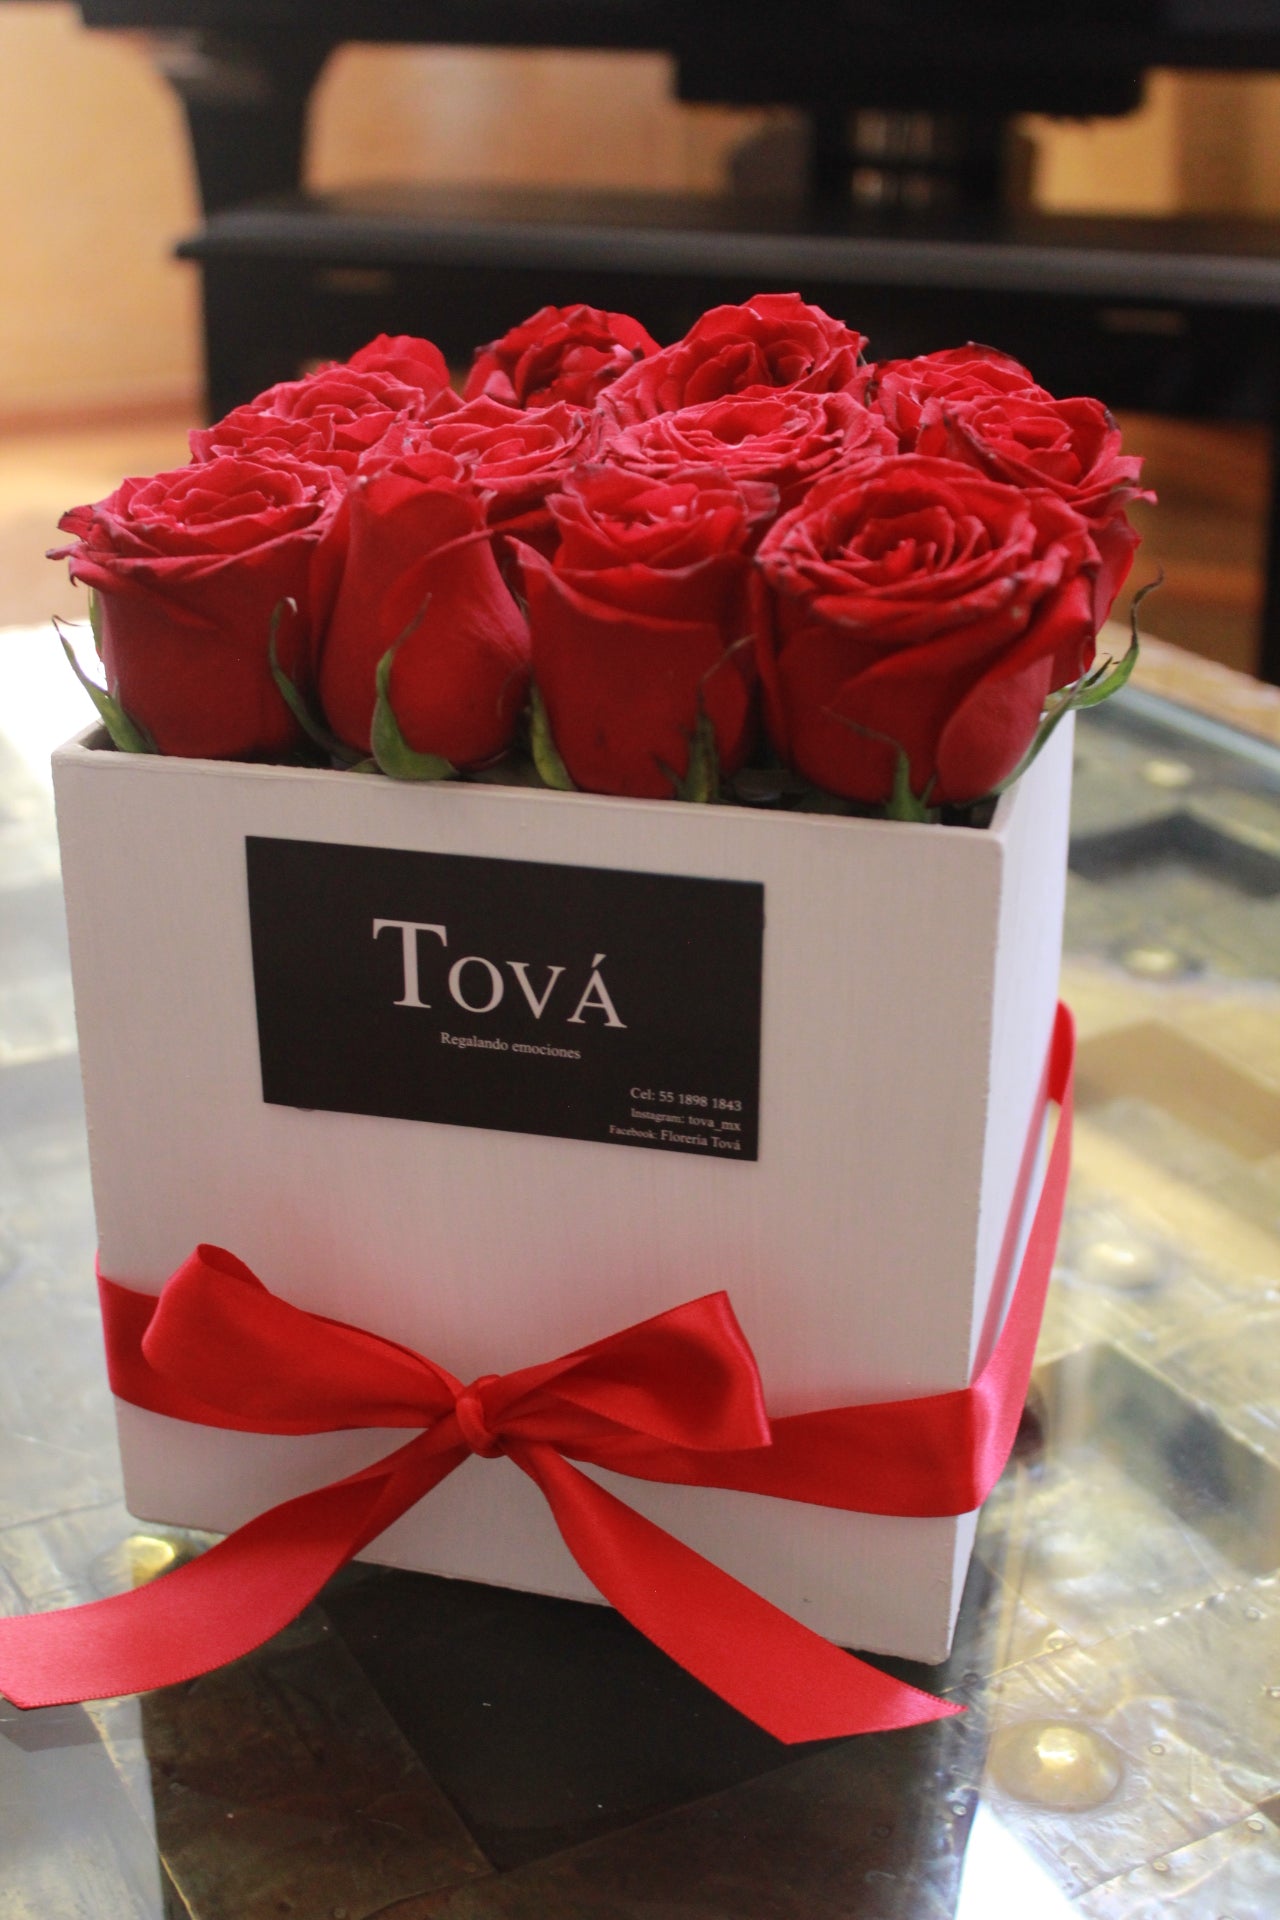 Una docena de rosas sobre caja de cartón rígido.